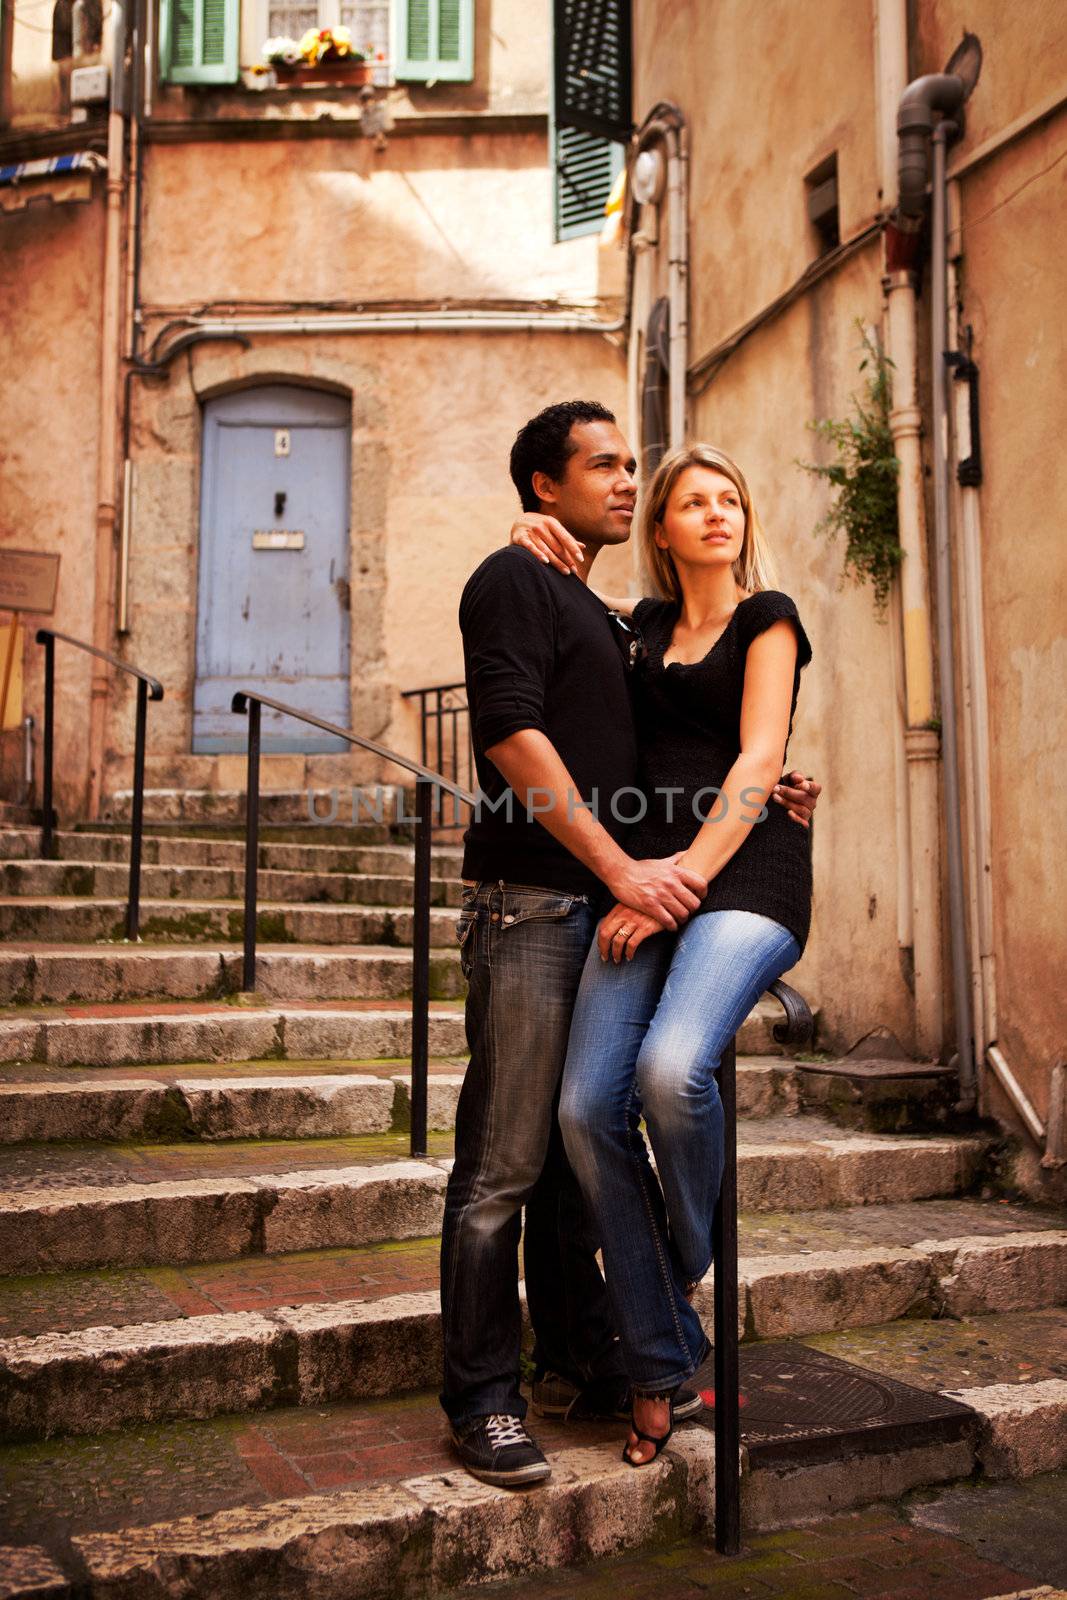 An attractive couple in a quaint european street